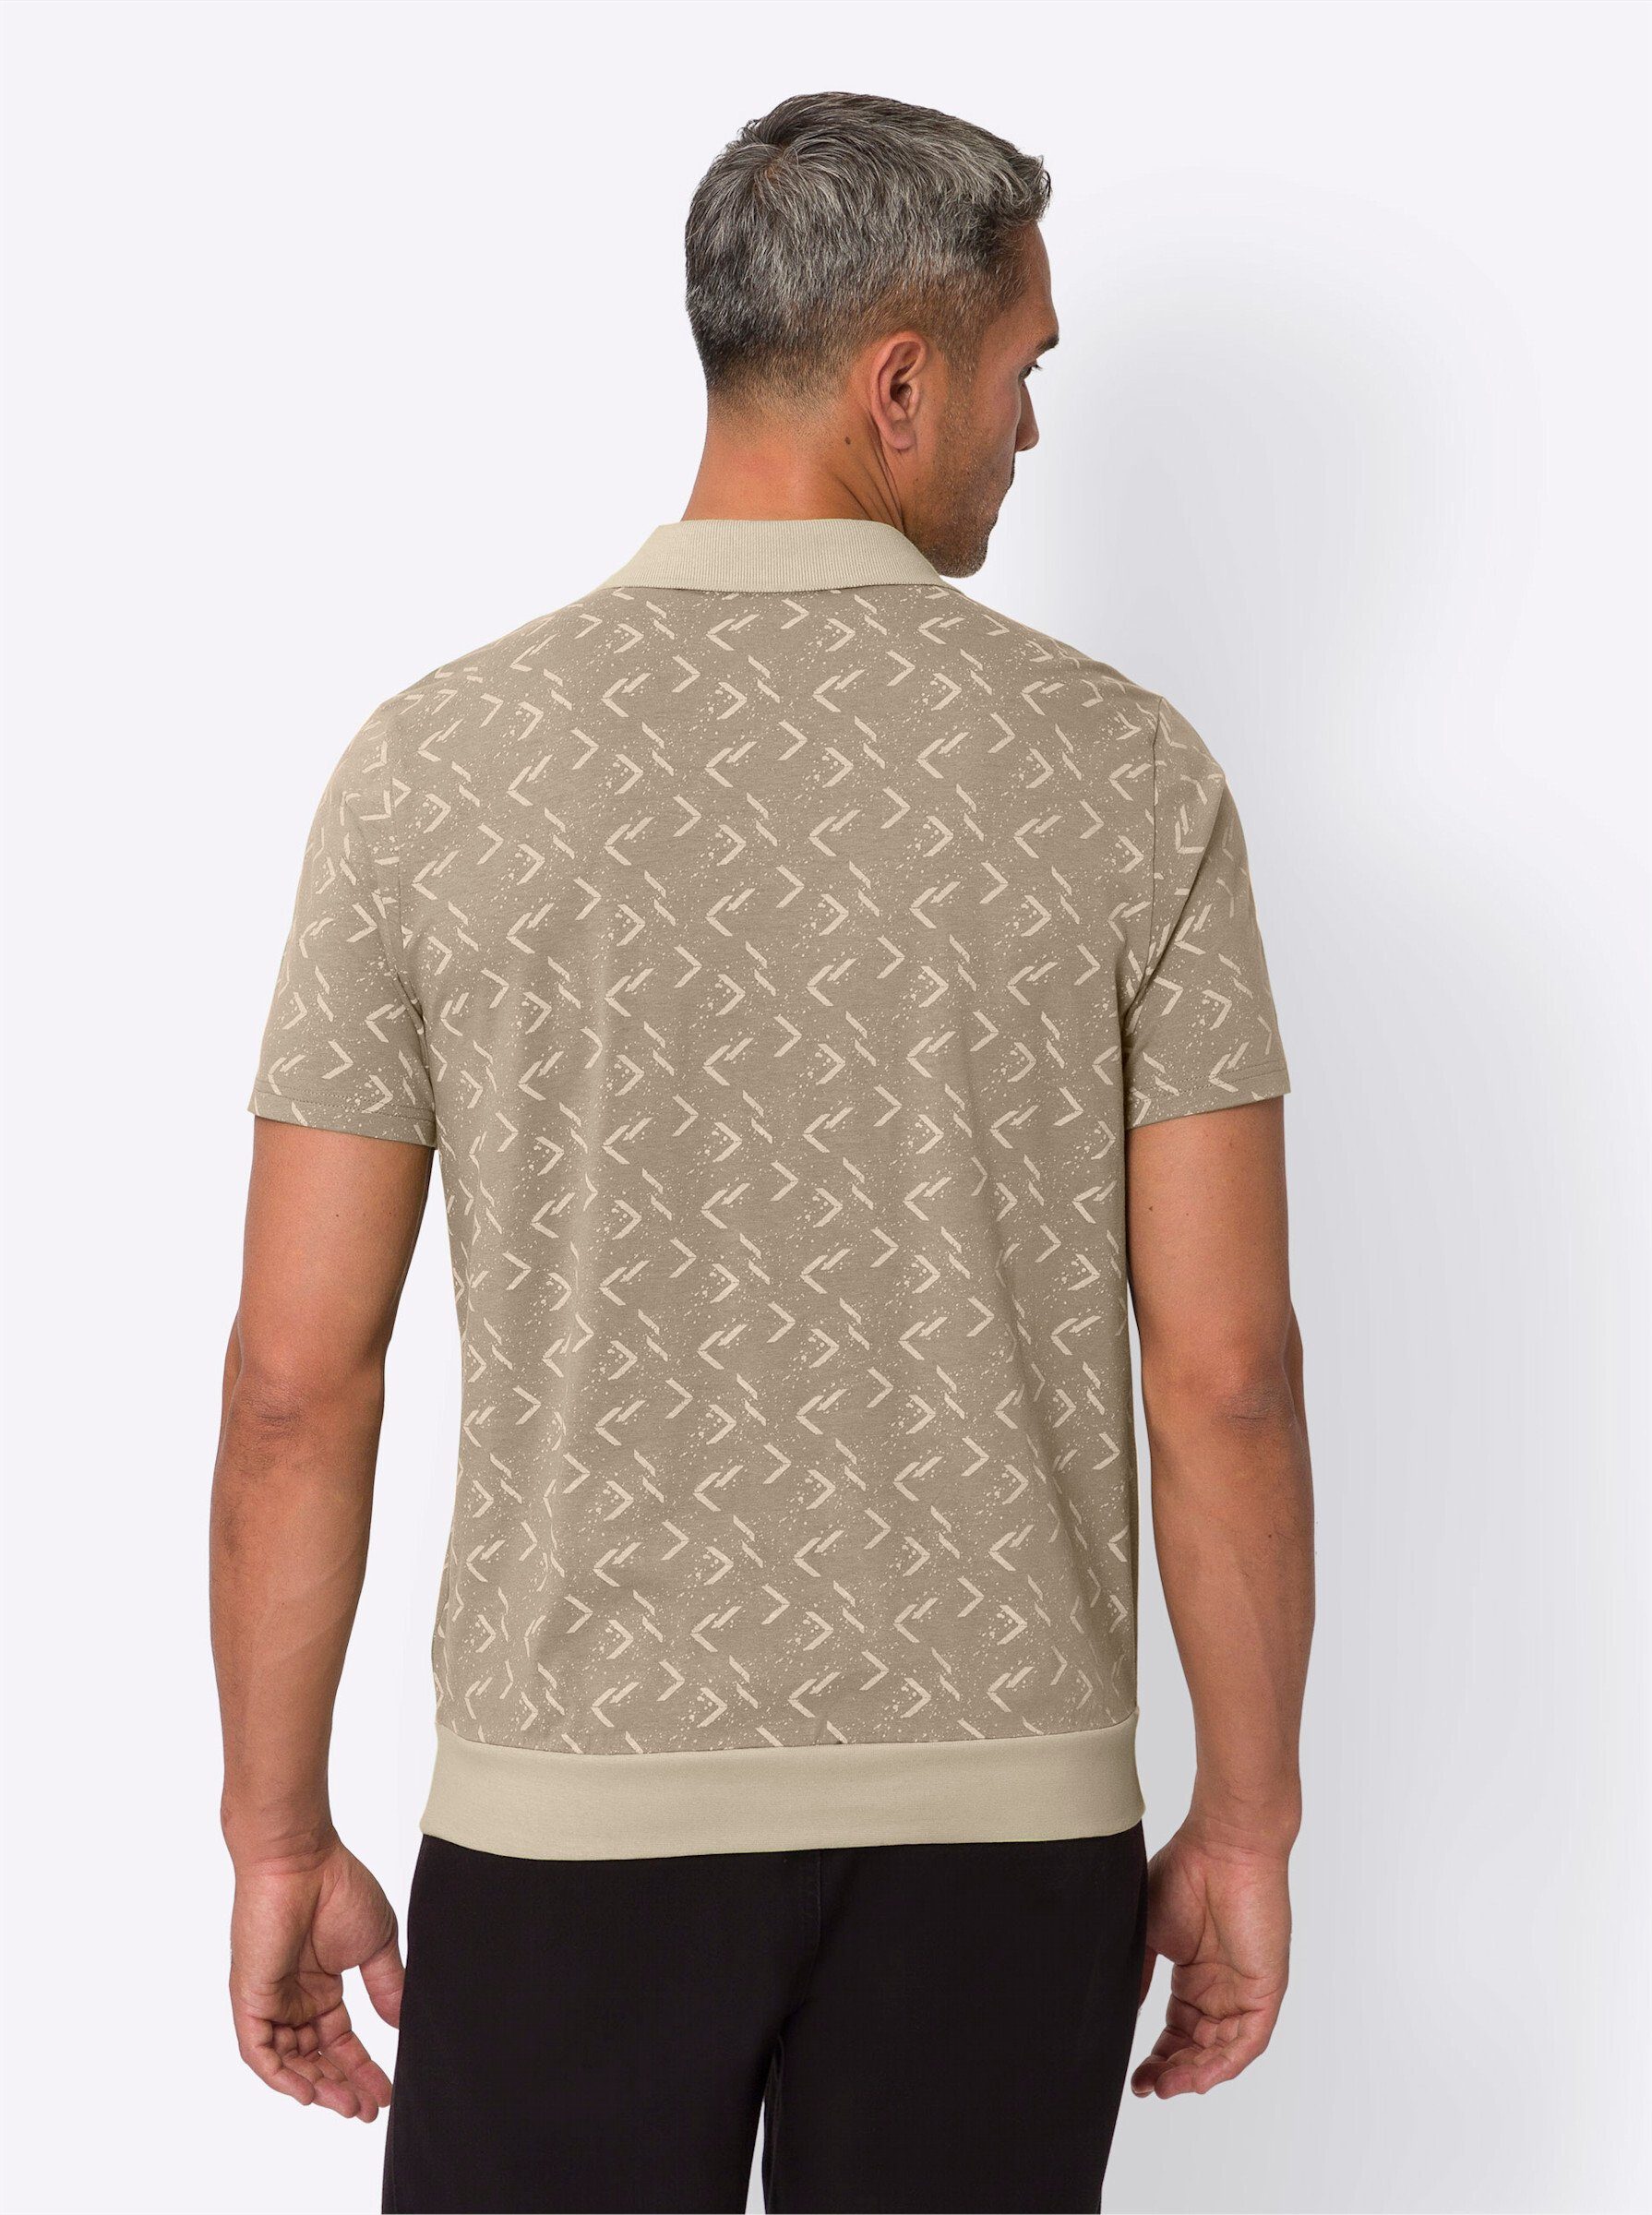 T-Shirt sesam-sand-bedruckt an! Sieh